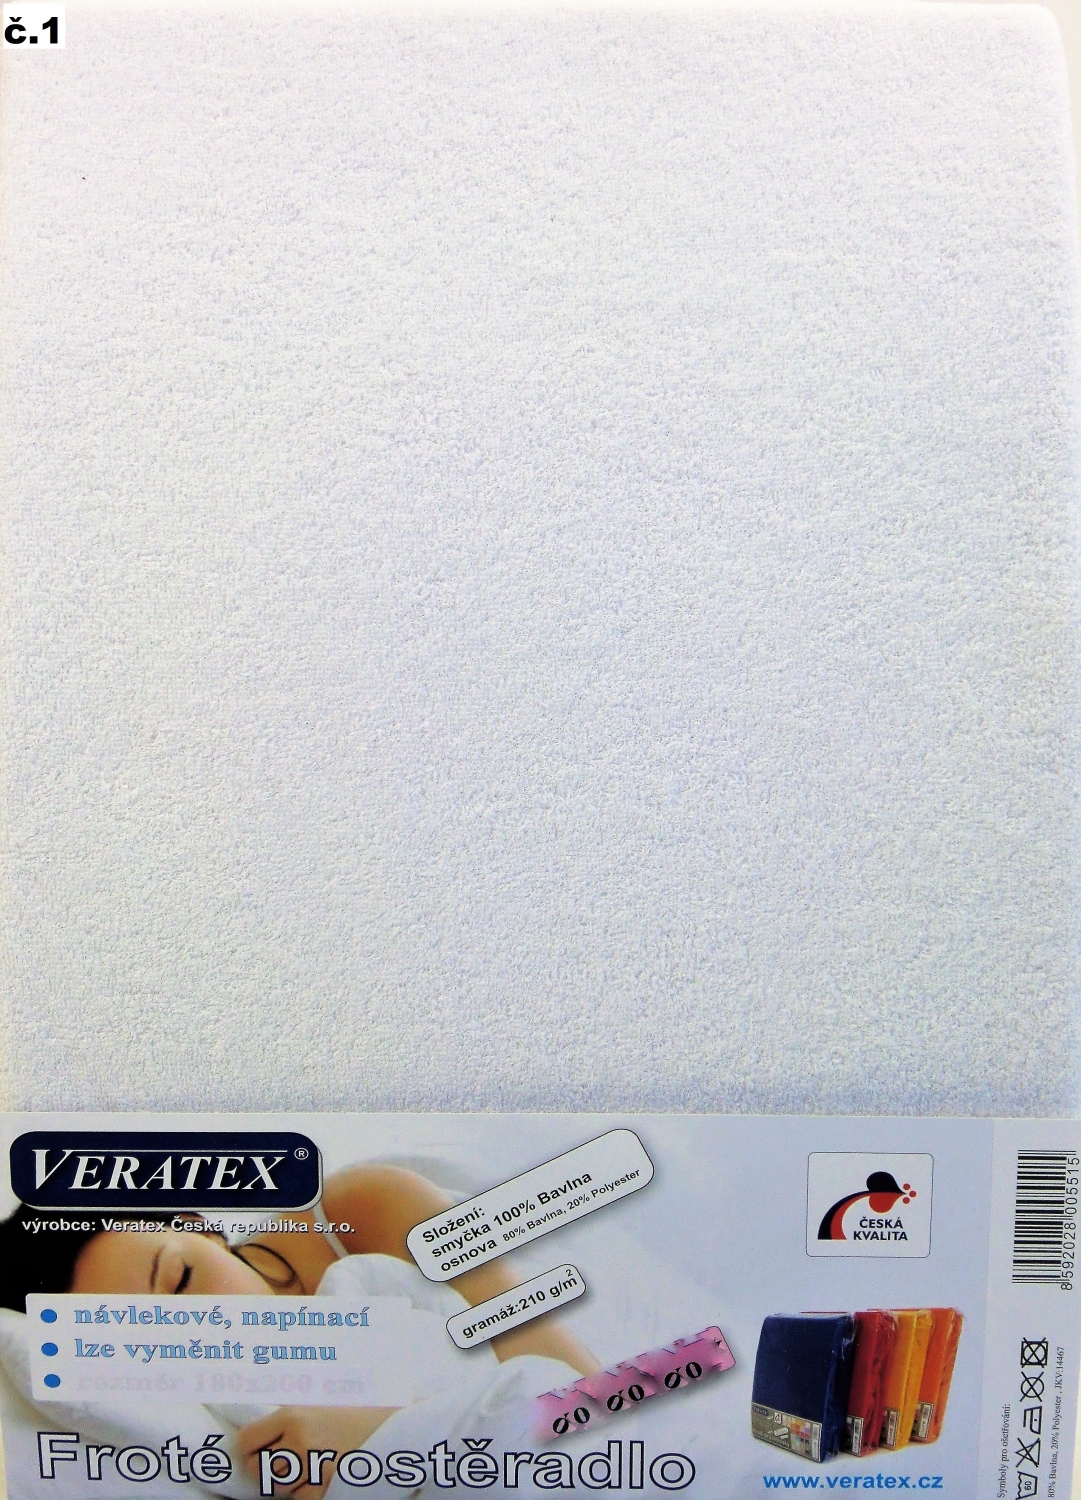 Veratex Froté prostěradlo postýlka 60 x 120 cm (č. 1-bílá)